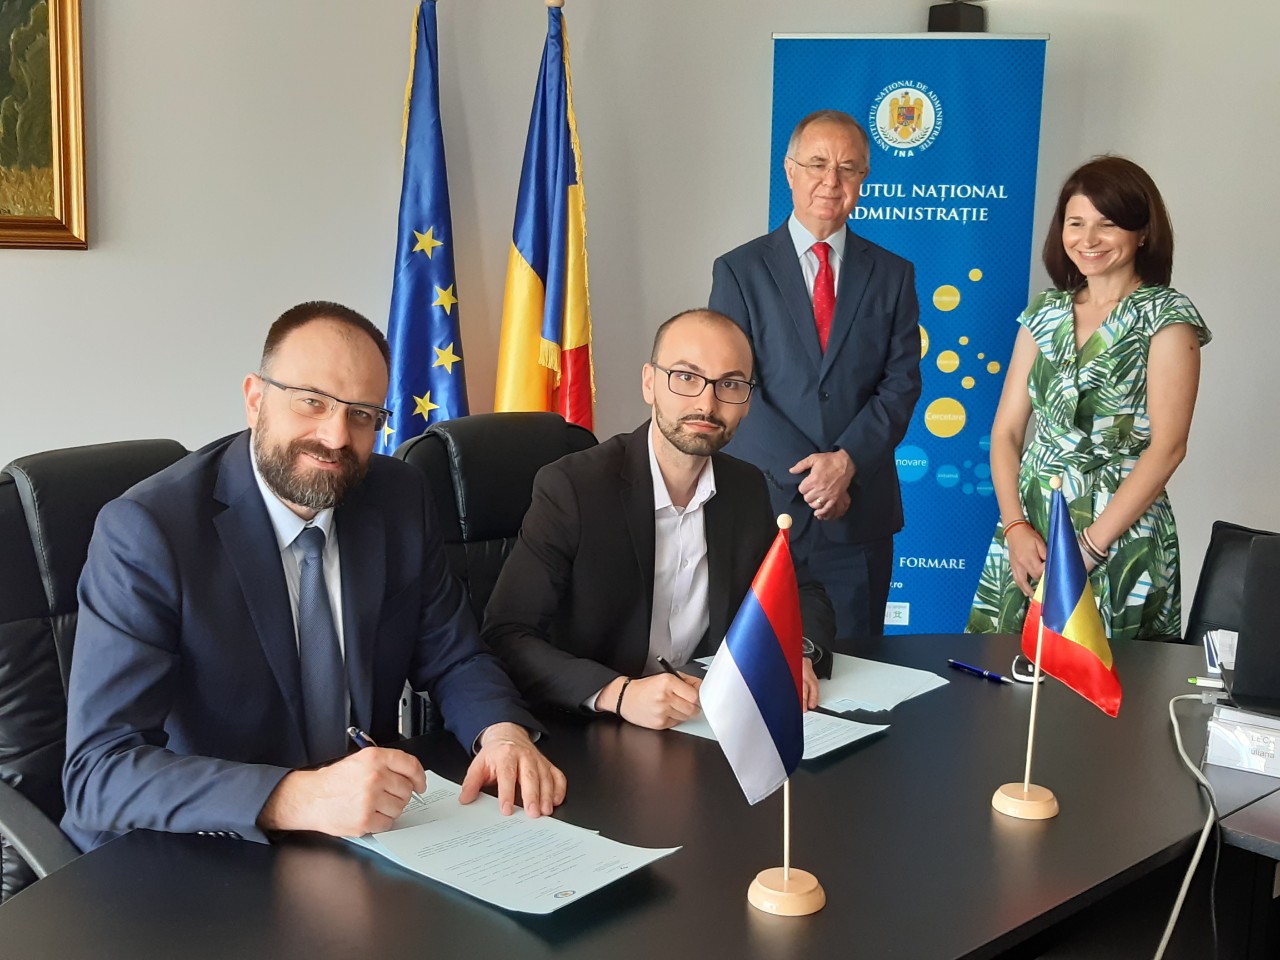 Академија потписала споразум о сарадњи са Националним институтом за управу Румуније